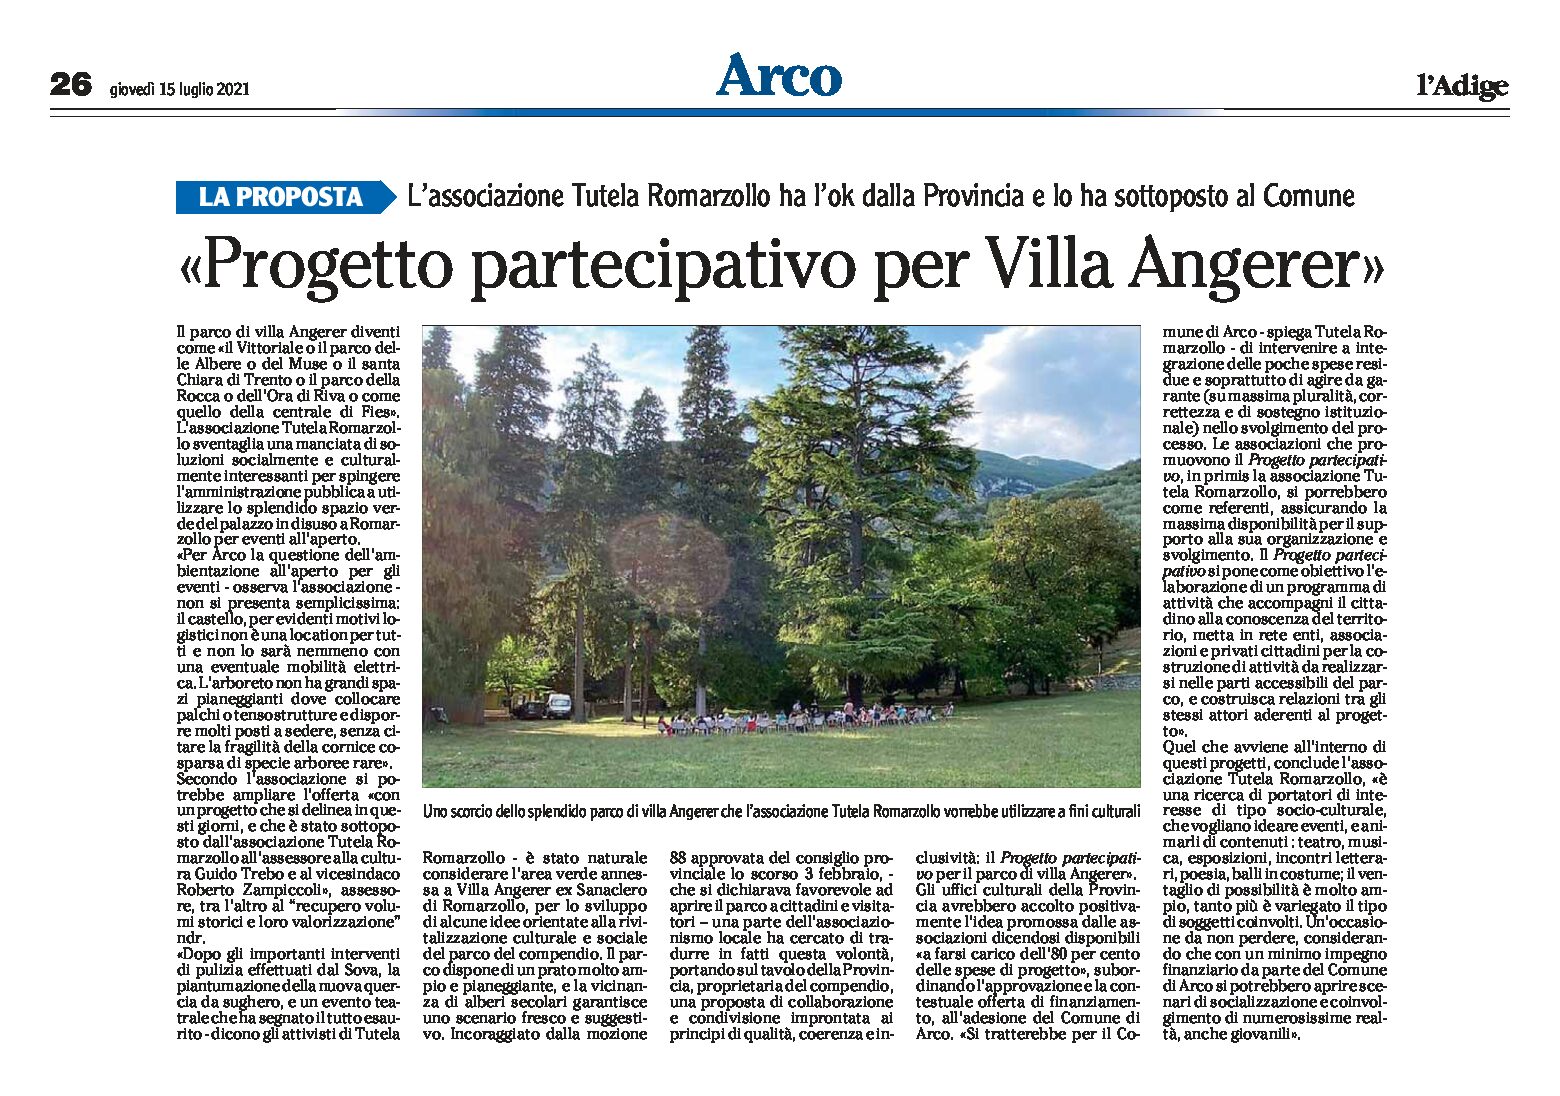 Arco, villa Angerer: progetto partecipativo per il Parco, ok dalla Provincia all’associazione Tutela Romarzollo